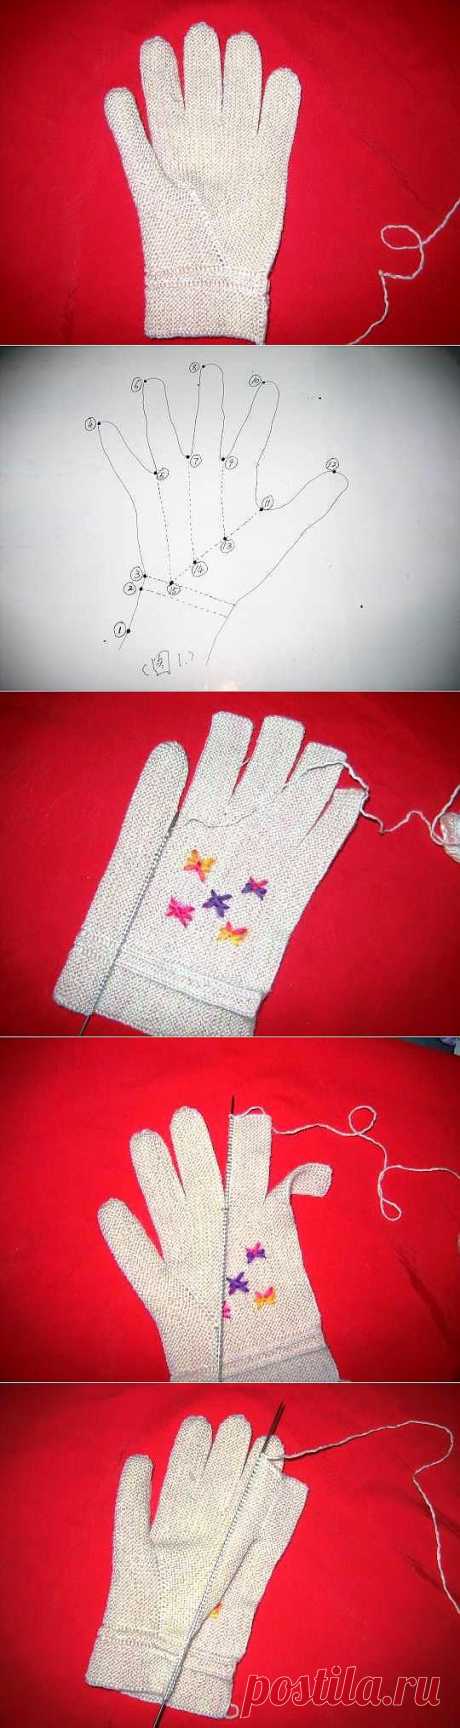 Оригинальный метод вязания перчаток.